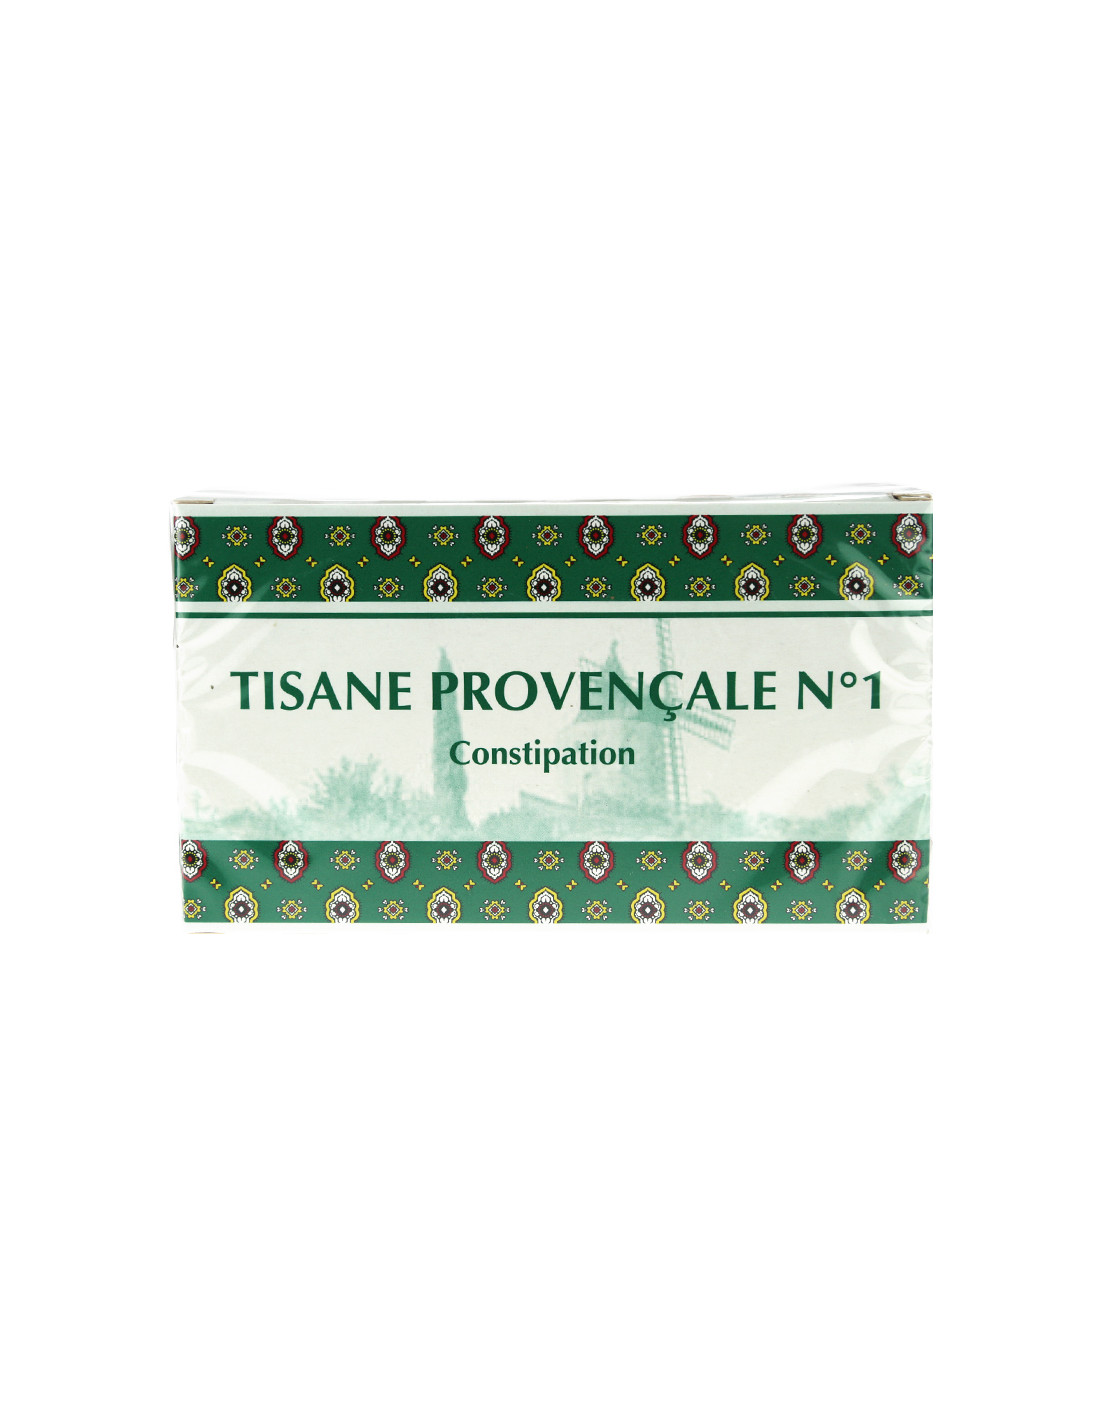 Tisane Provençale n°1 plantes pour tisane 24 sachets - laxatif